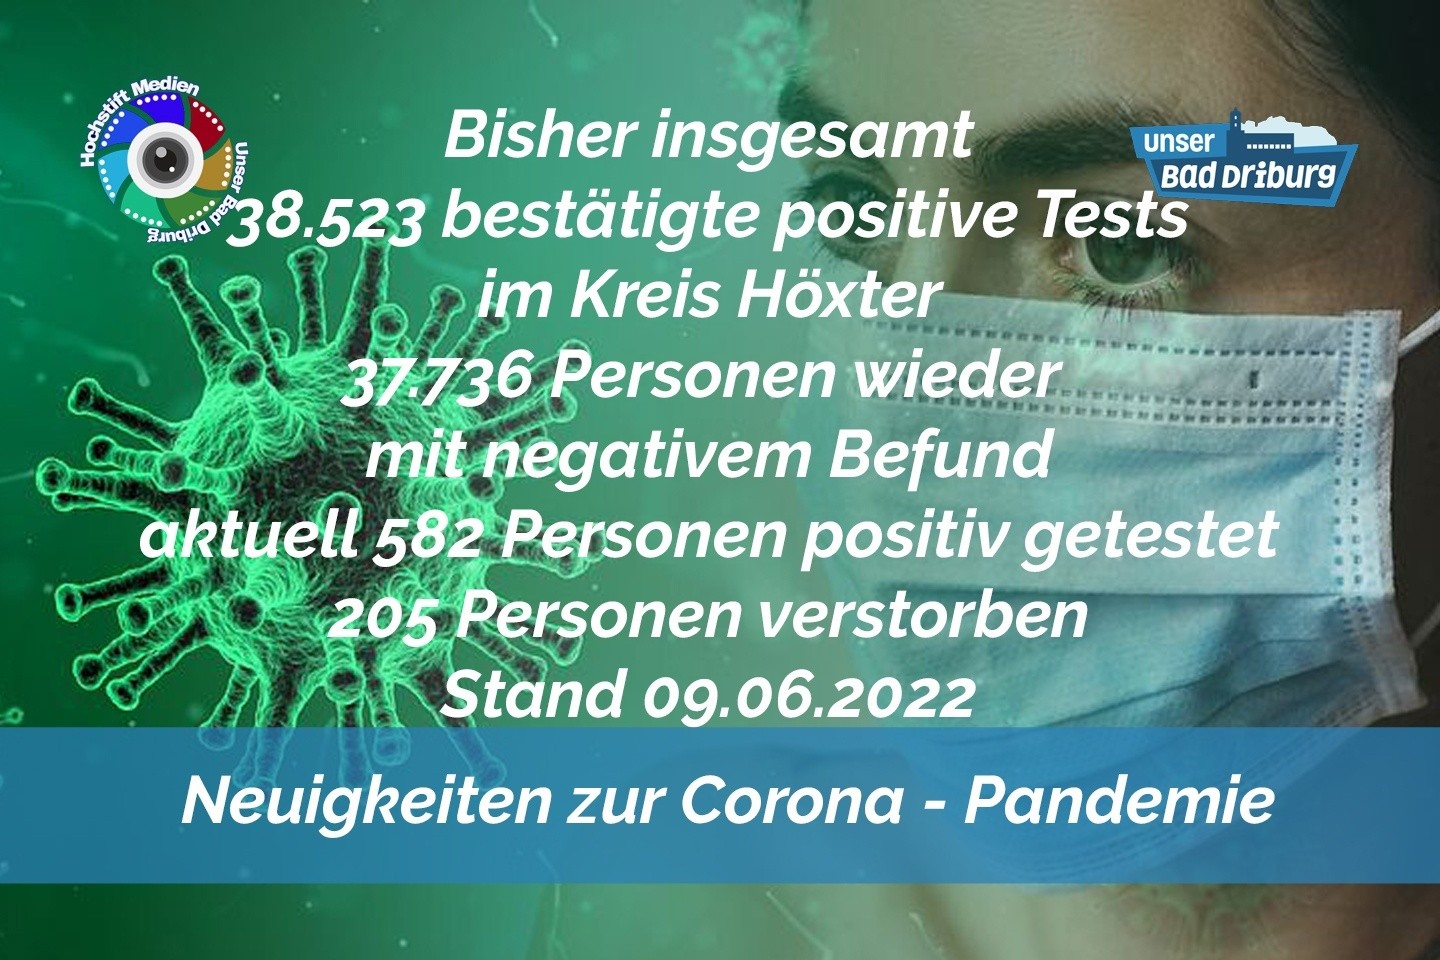 Update 09. Juni 2022: 112 weitere amtlich positive Tests im Kreis Höxter